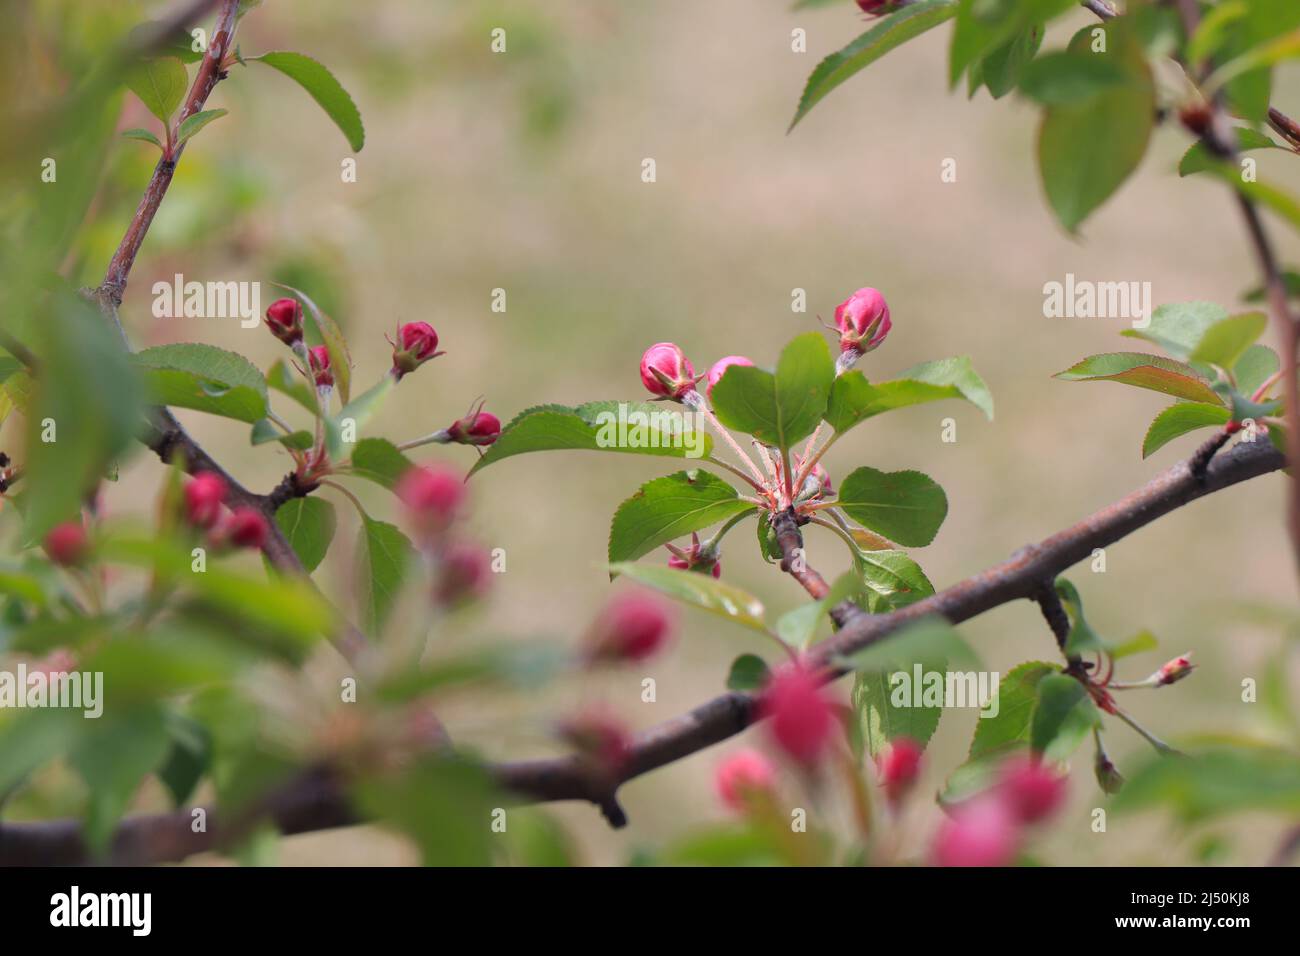 Appletree Blume schließt sich. Apfelgarten in Blüte. Schöne rosa und weiße Apfelbaumblumen. Blumen und Knospen von Apfelbaum auf einem verschwommenen Hintergrund Stockfoto